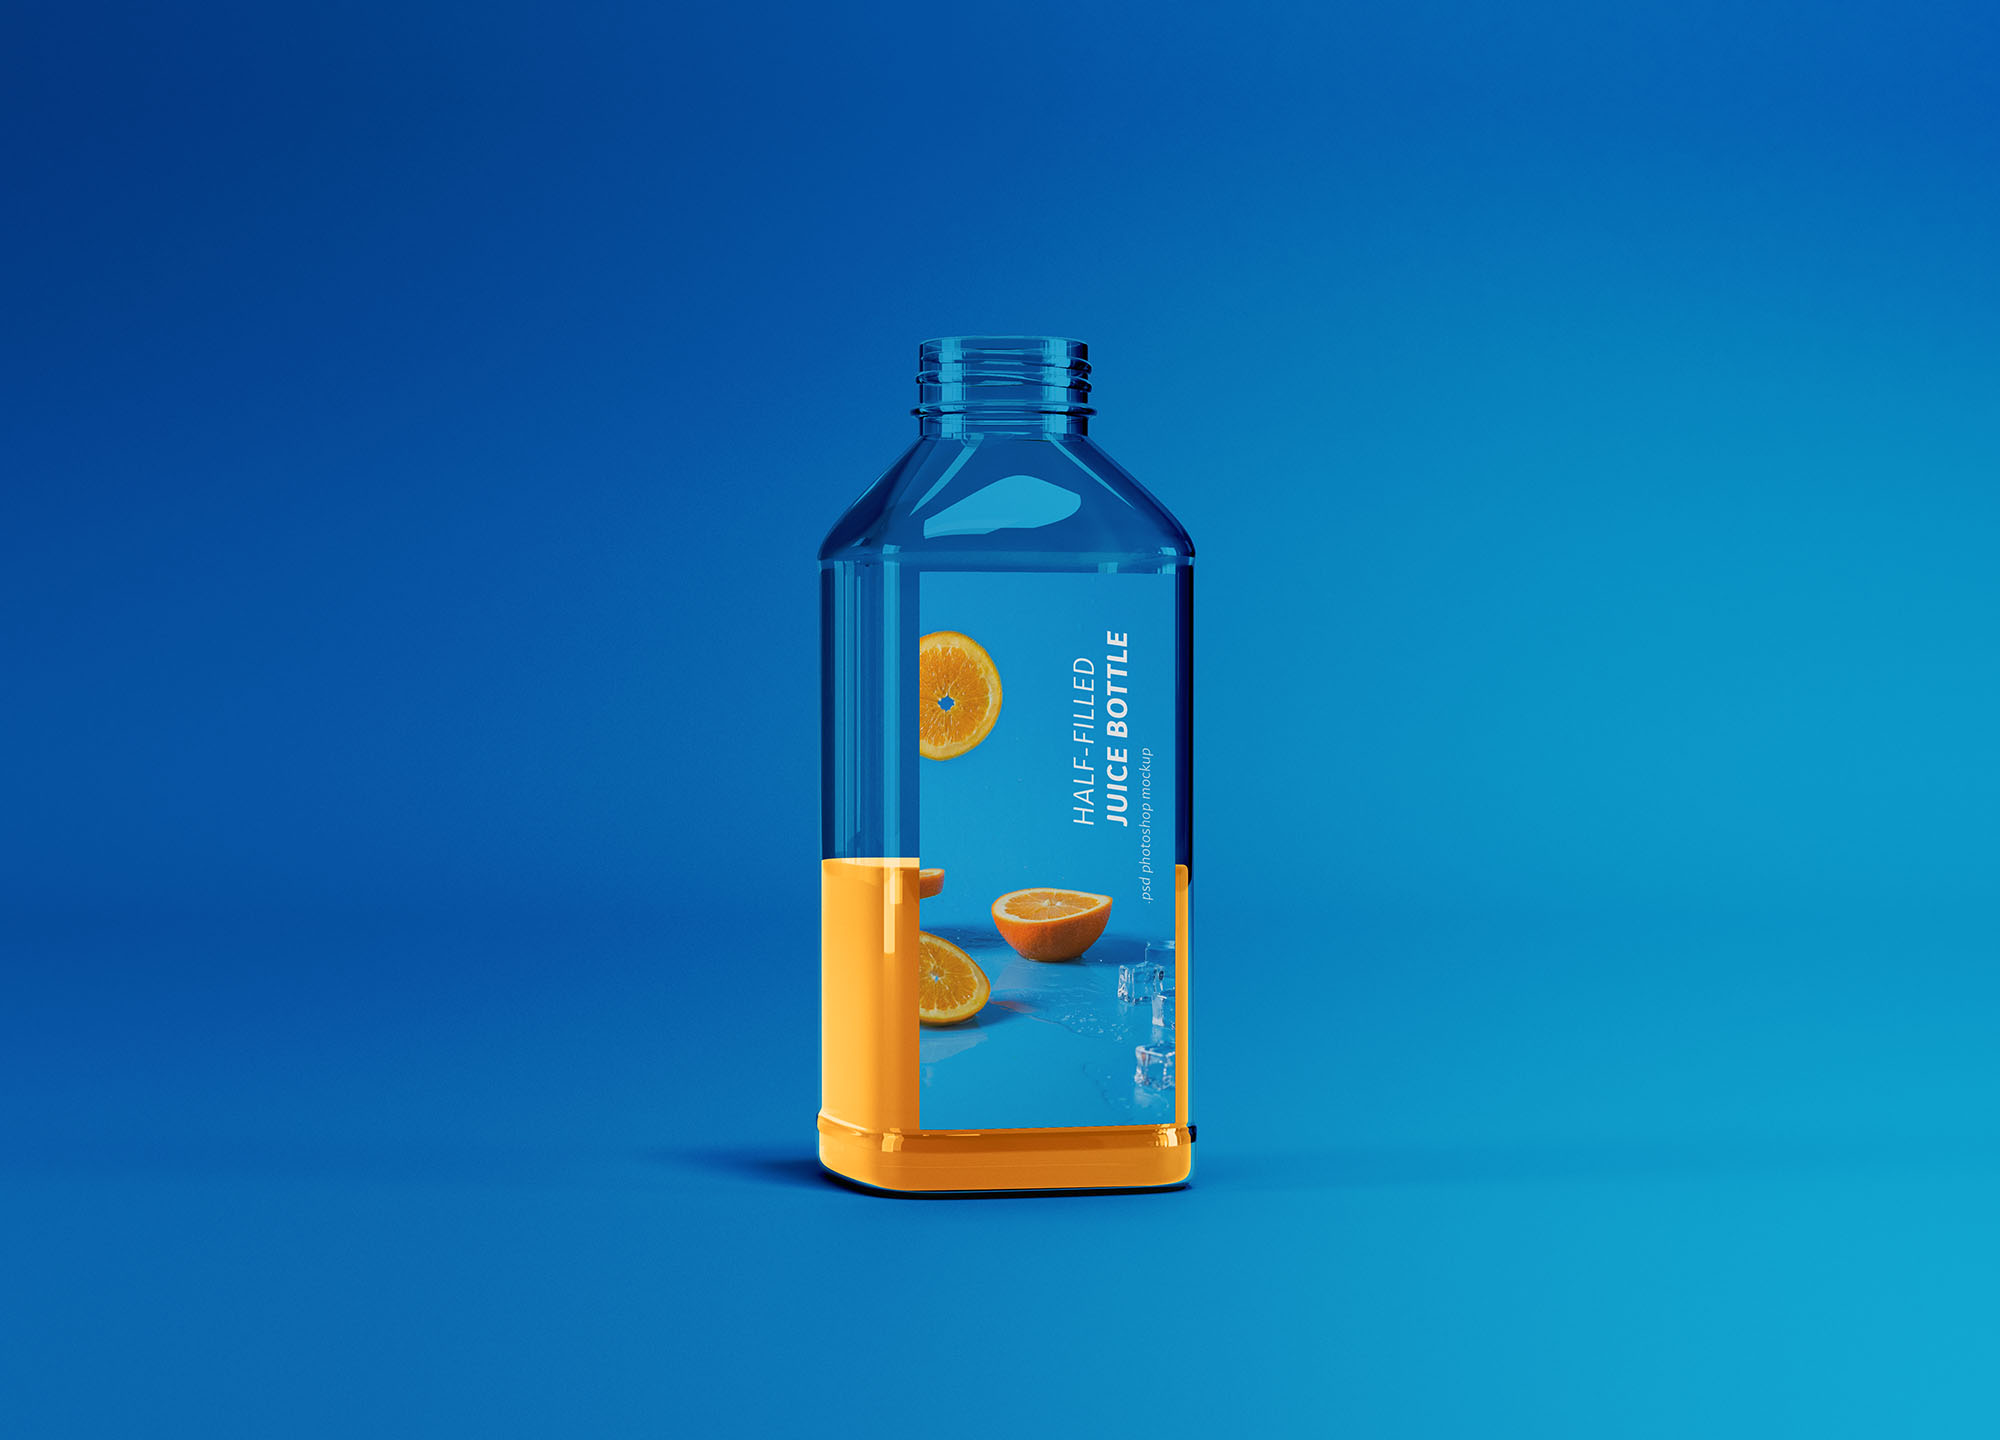 半罐透明塑料果汁瓶外观设计展示第一素材精选 Half-filled Juice Bottle Mockup插图